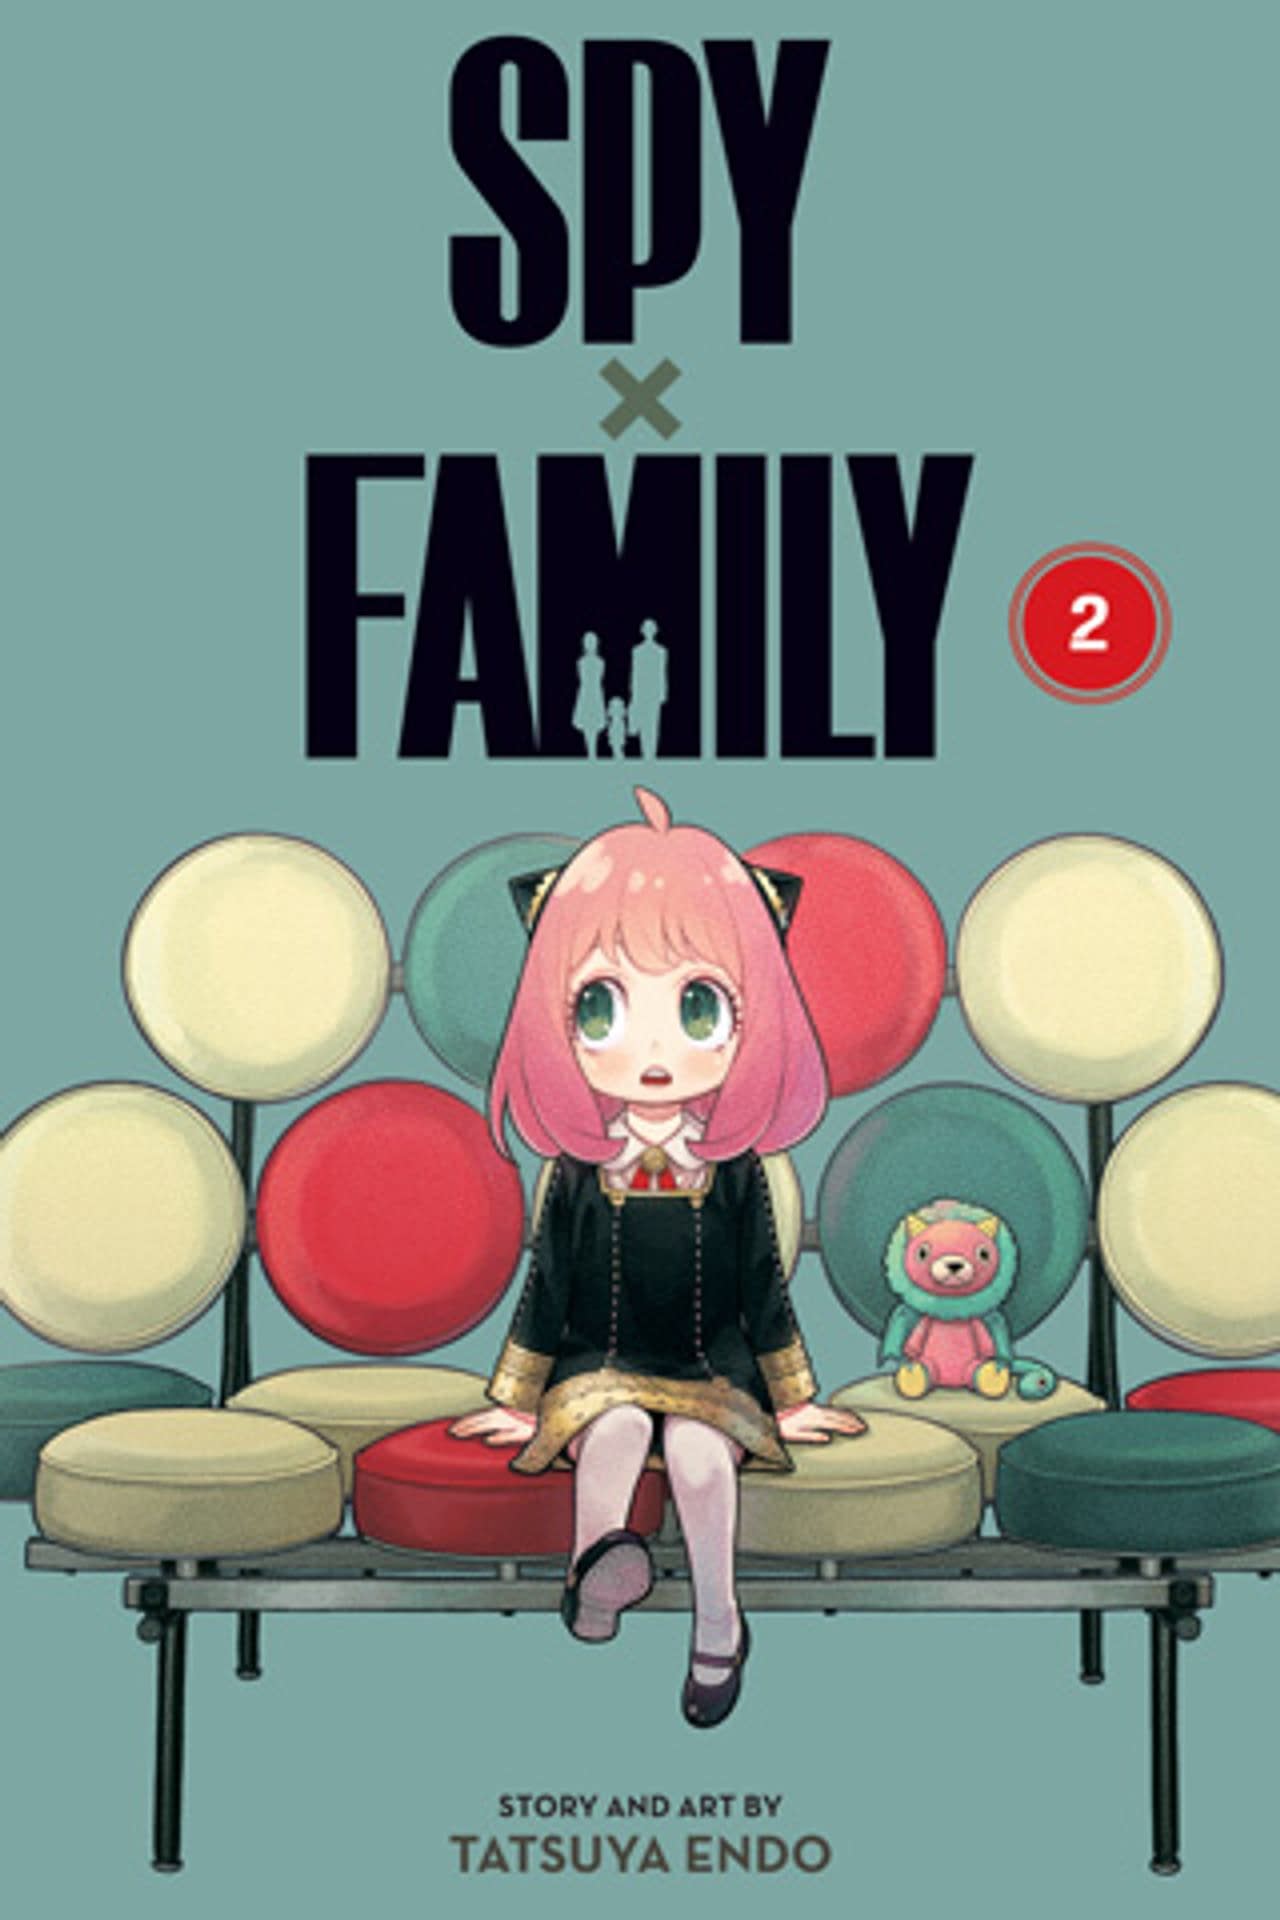 Yor Goes Off the Chain in Latest SPY x FAMILY Season 2 Anime Visual -  Crunchyroll News